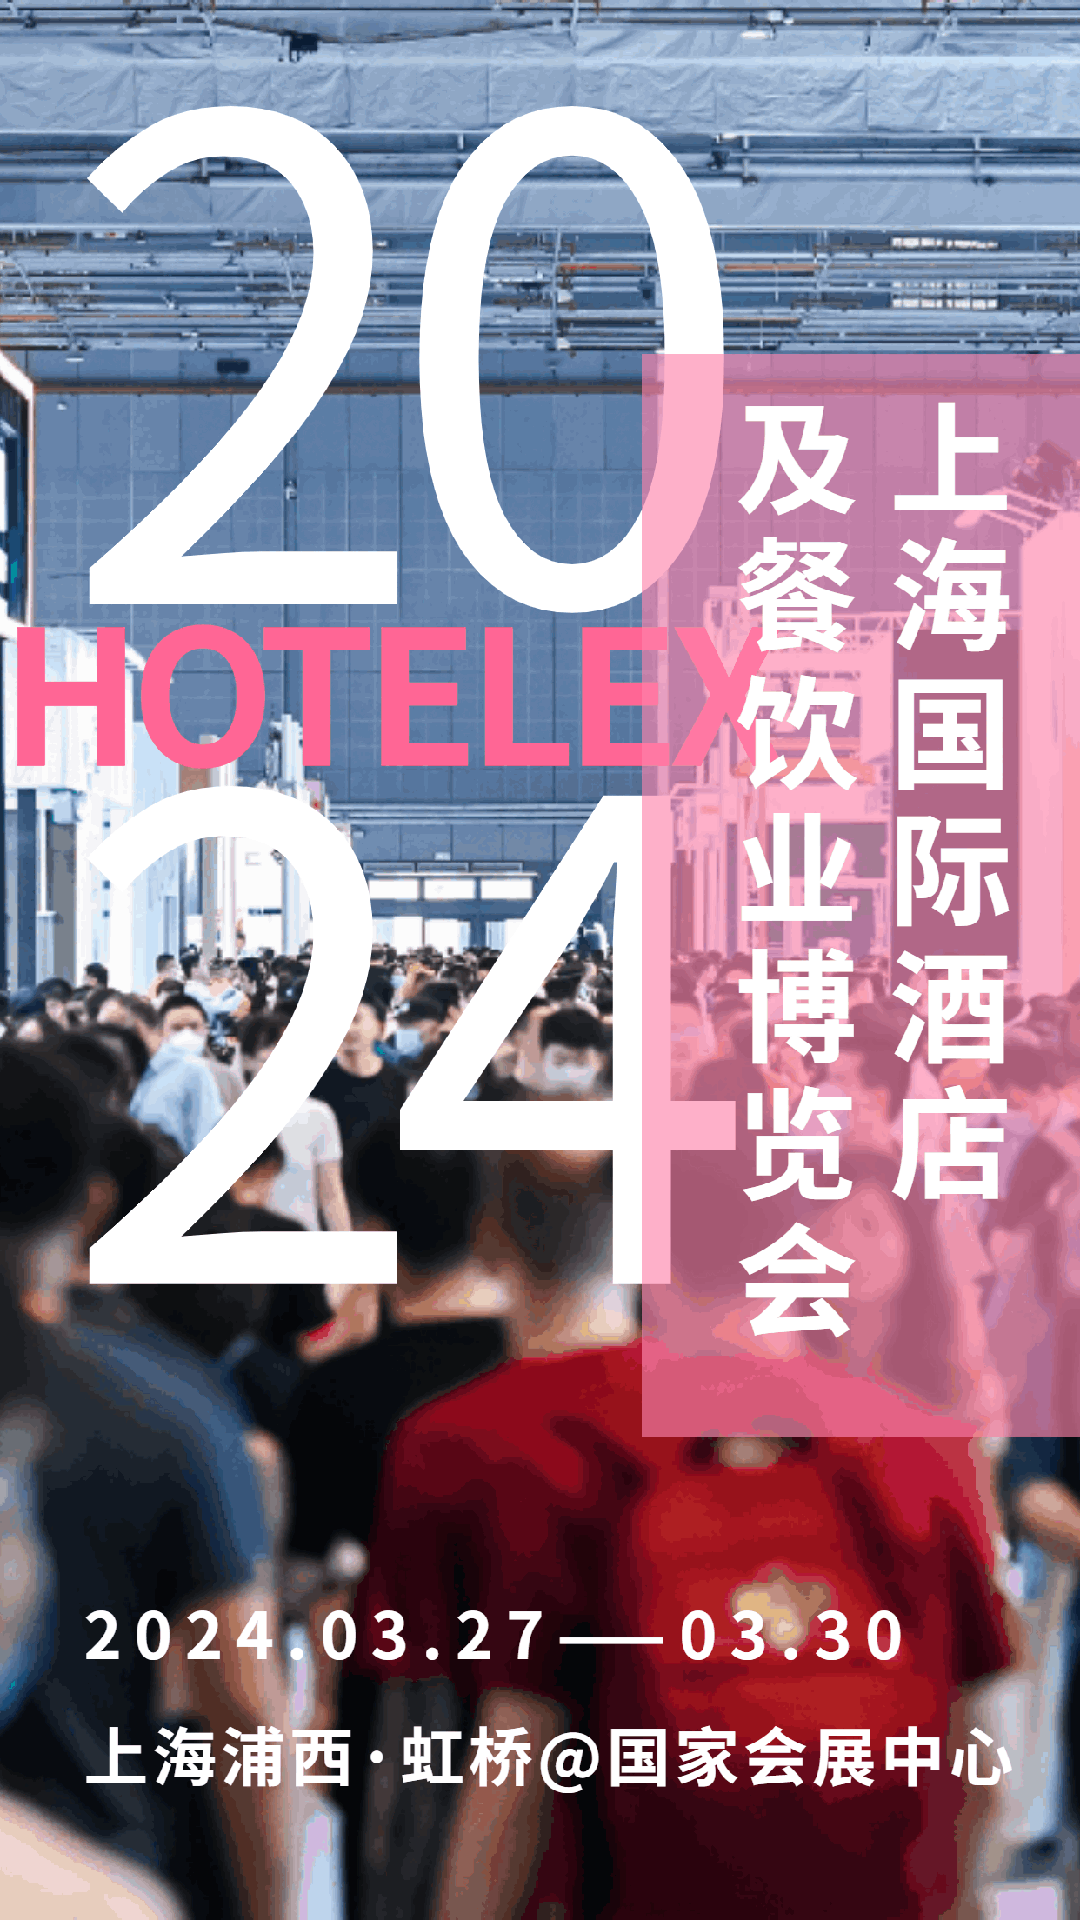 2024年上海*32届酒店烧水壶/冷水杯展览会-3月27日-30日举办